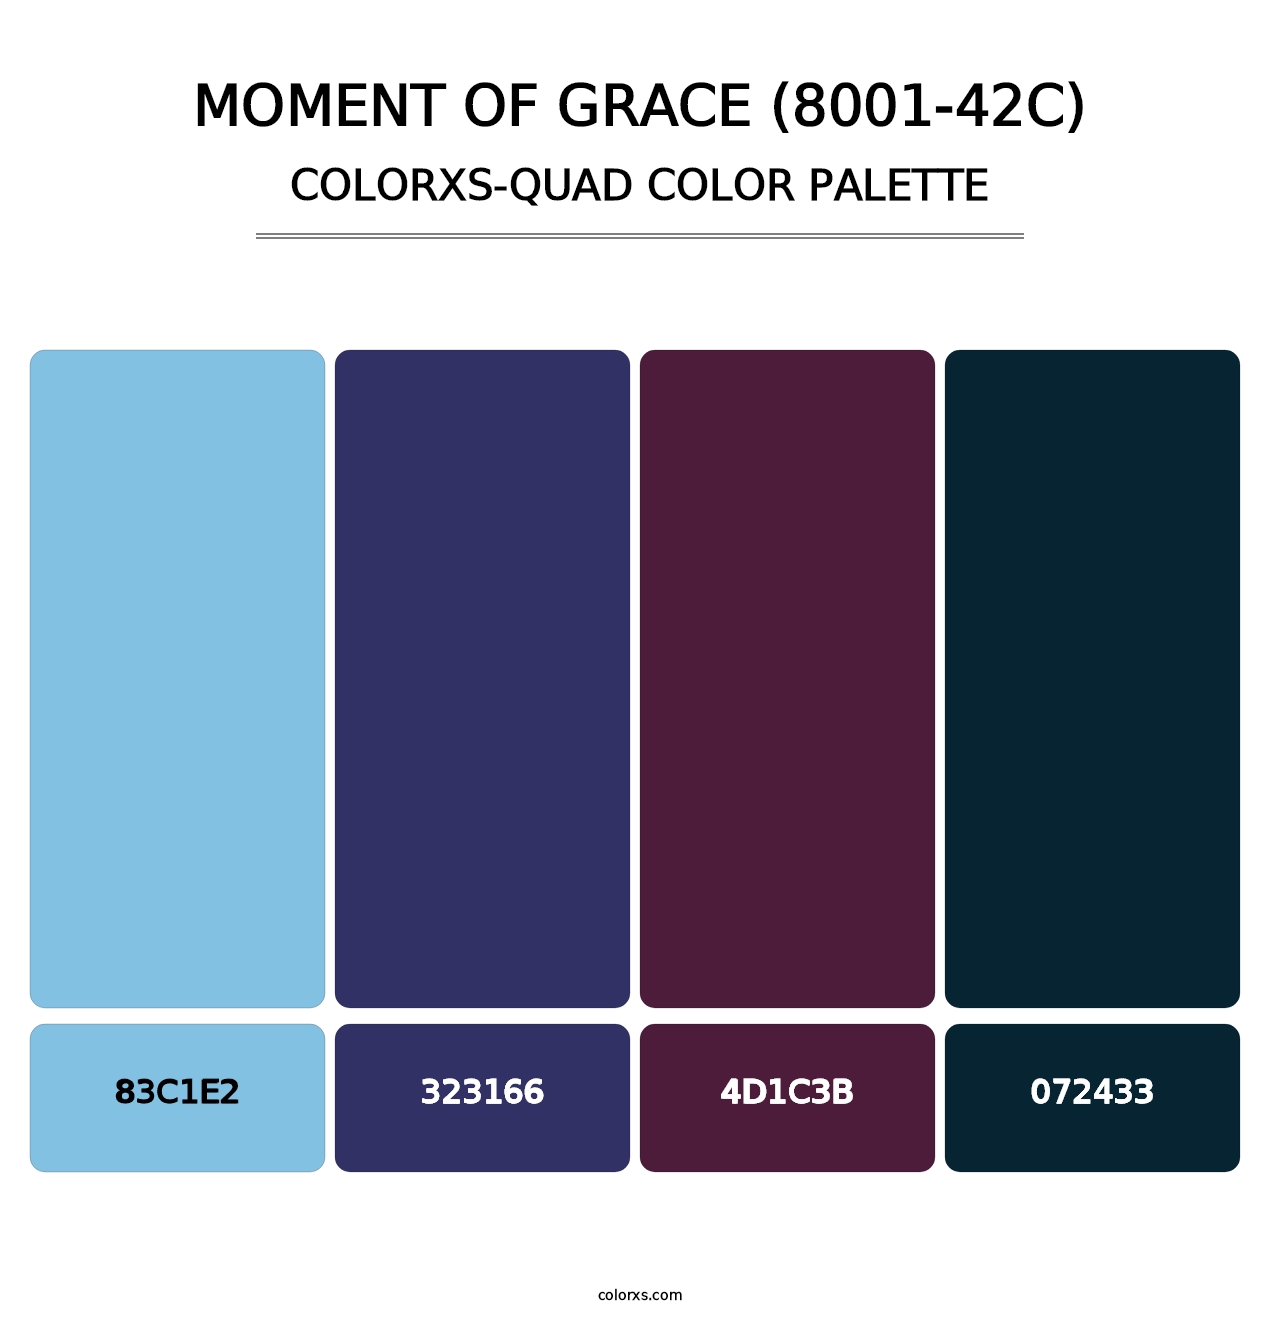 Moment of Grace (8001-42C) - Colorxs Quad Palette